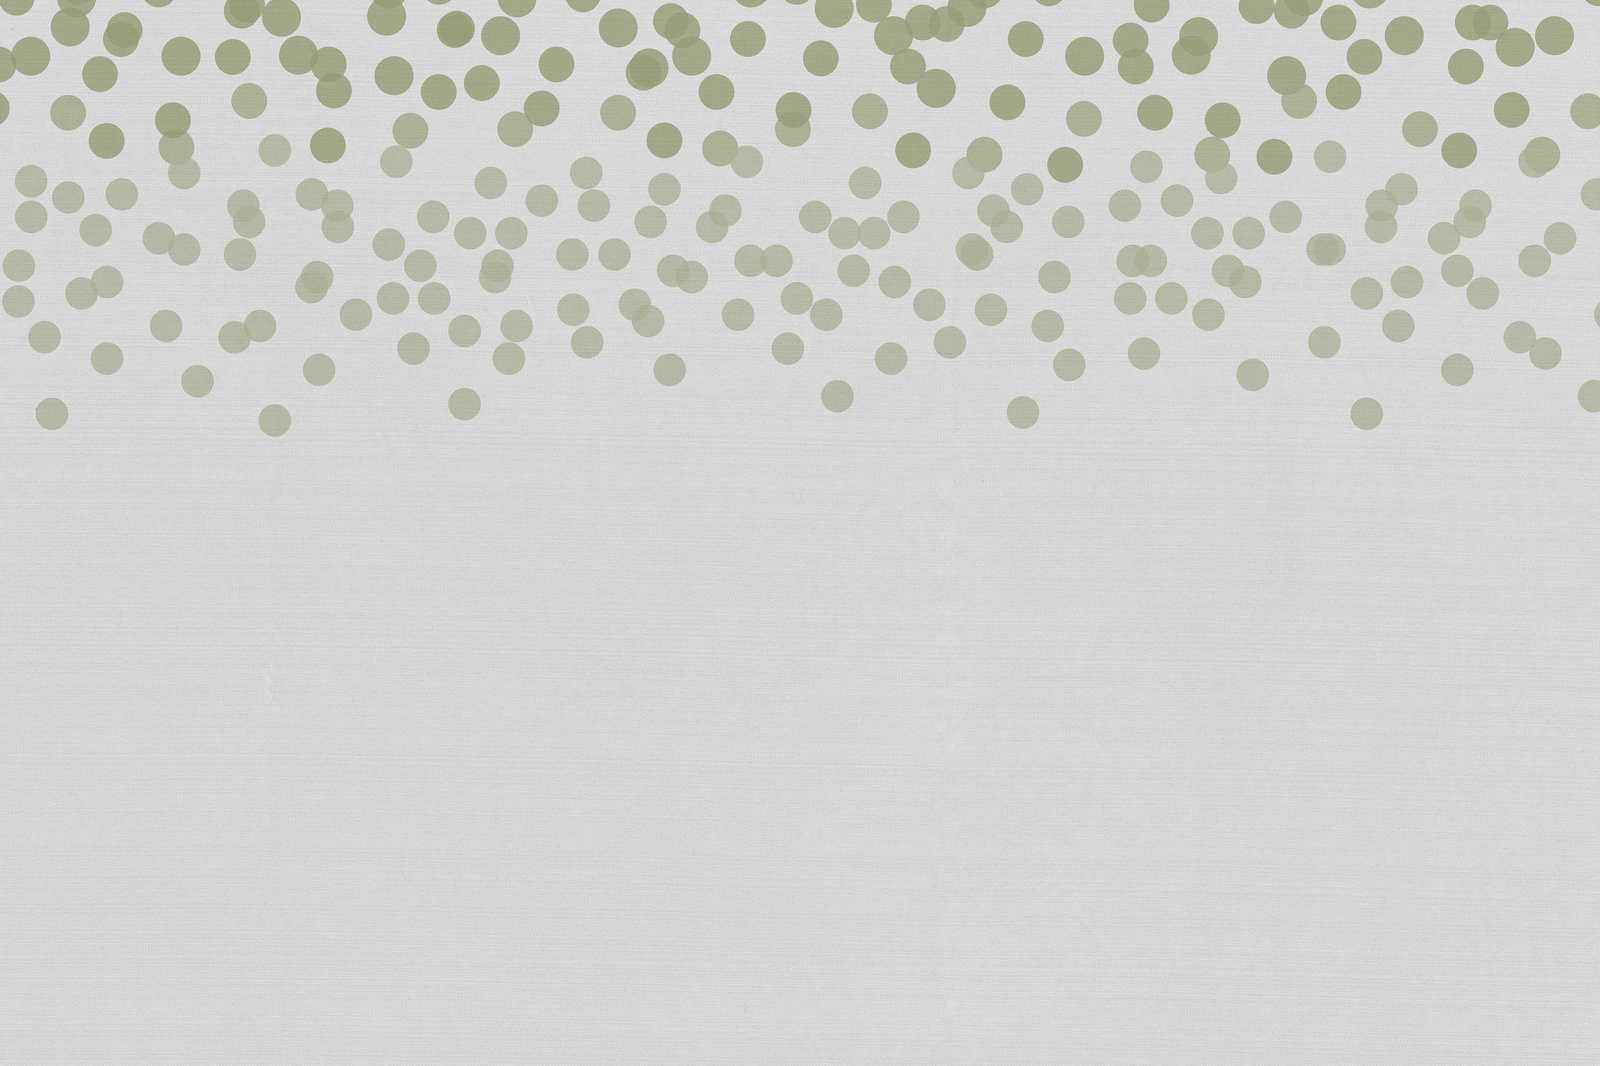             Canvas schilderij met discreet stippenpatroon | groen, grijs - 0,90 m x 0,60 m
        